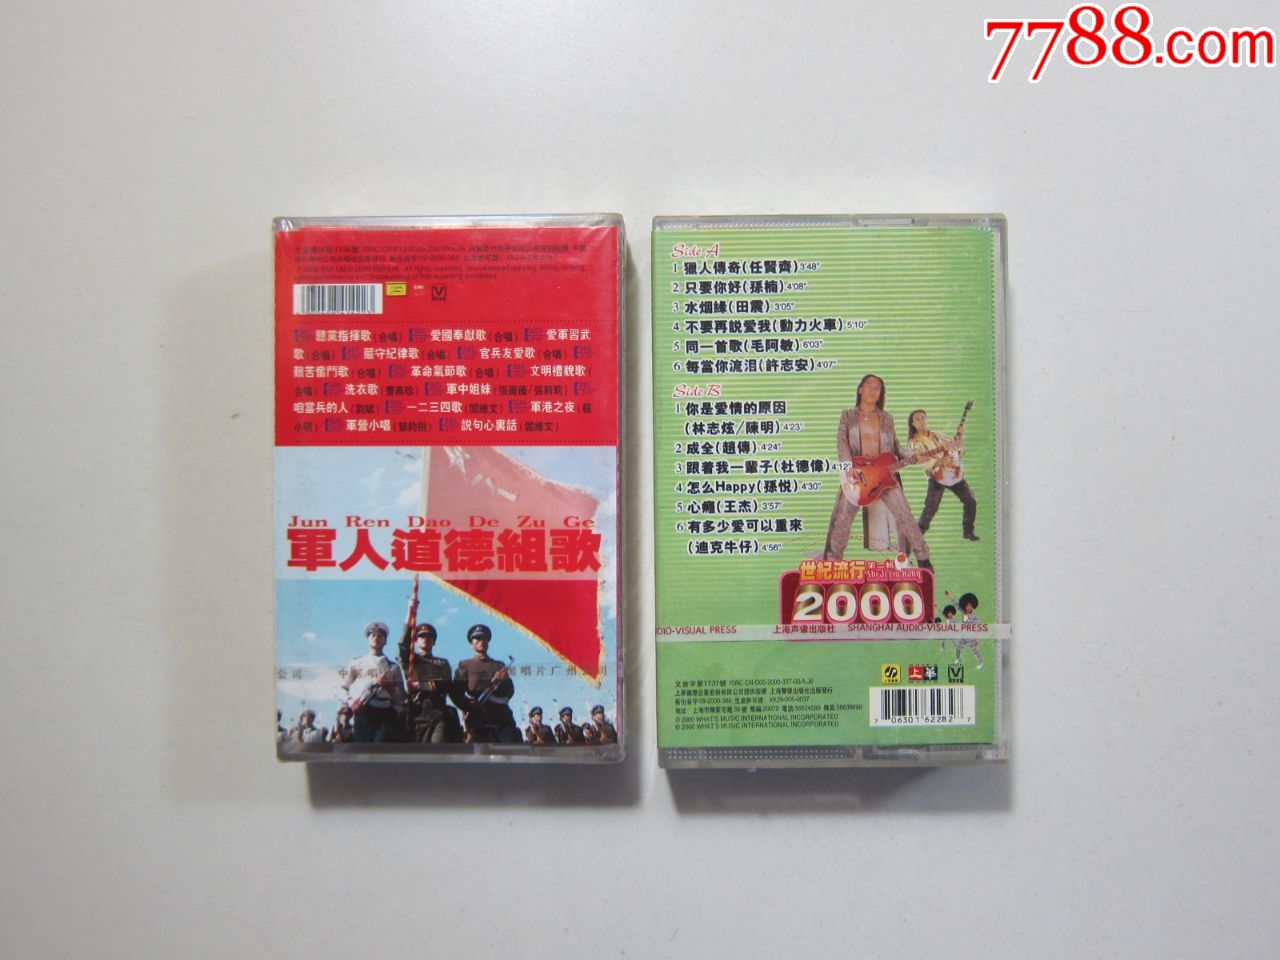 磁带两盒,军人道德组歌,2000世纪流行,全新未拆封